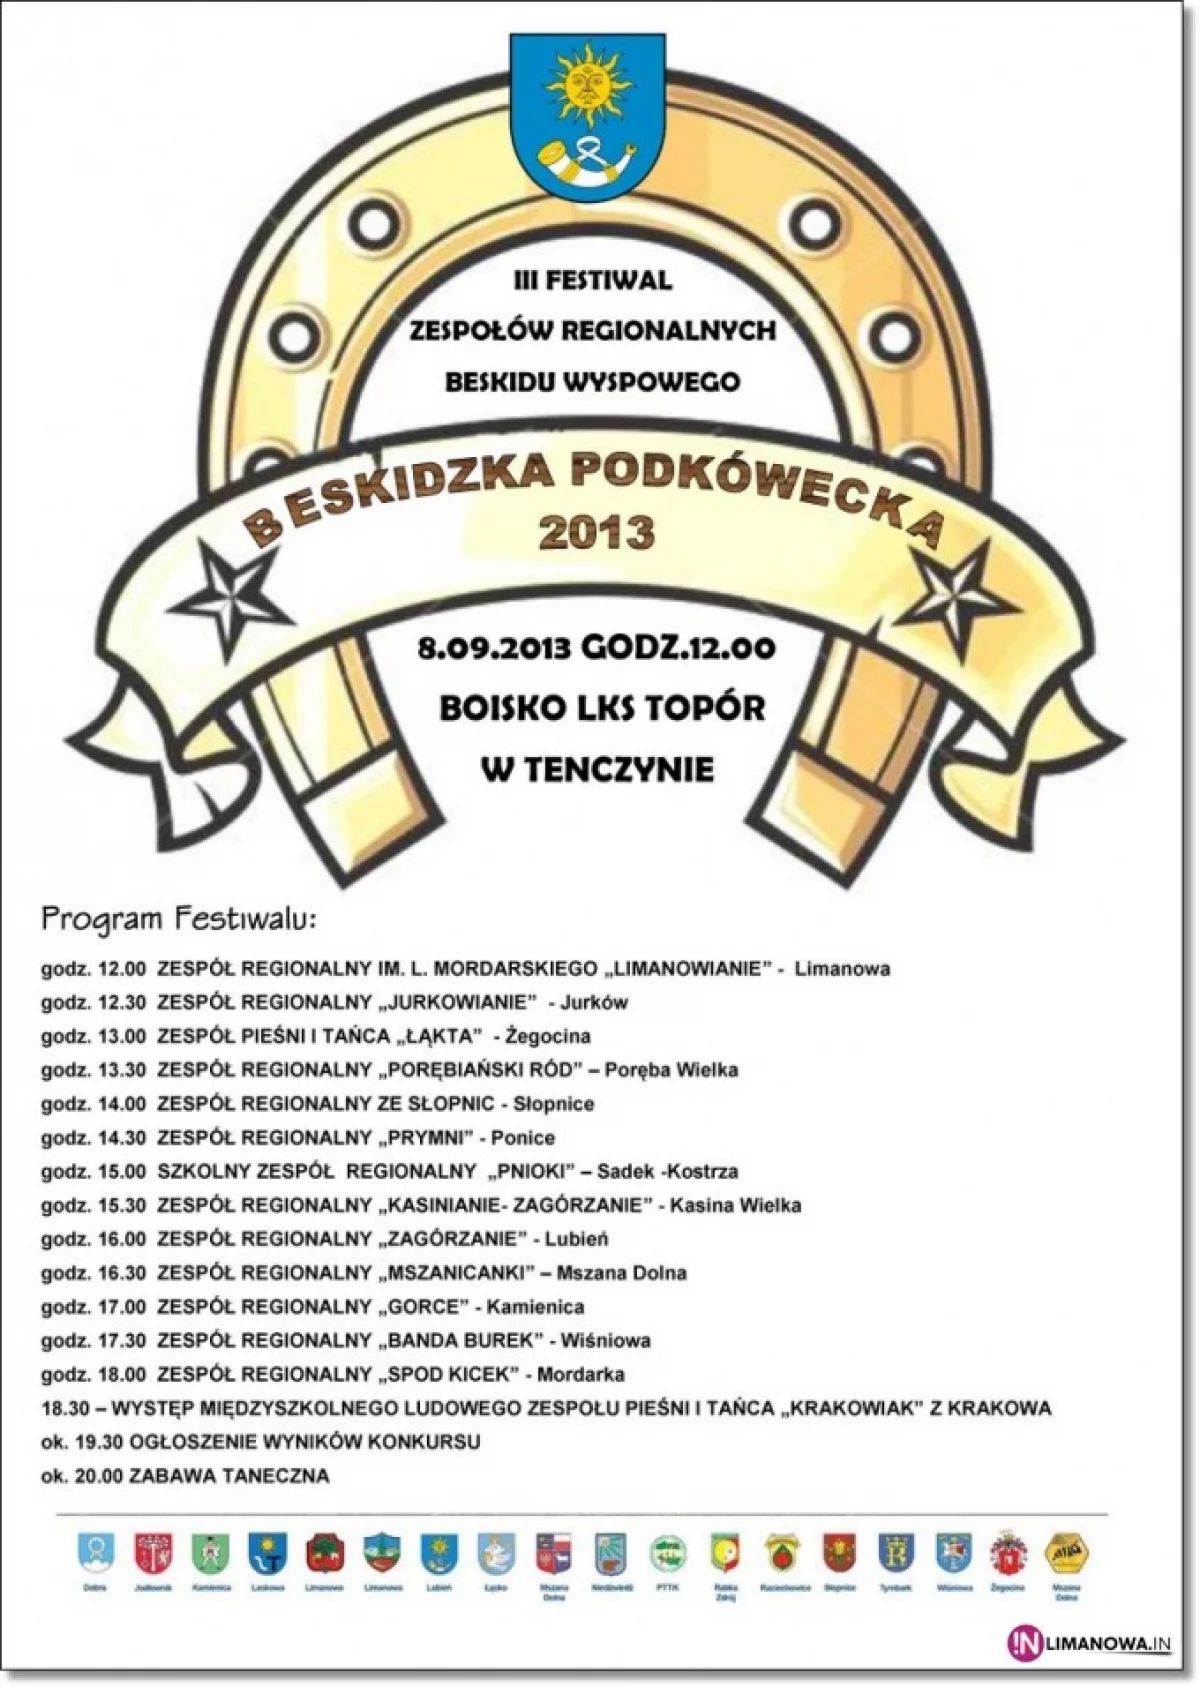 III Festiwal Zespołów Regionalnych Beskidu Wyspowego „Beskidzka Podkówecka”